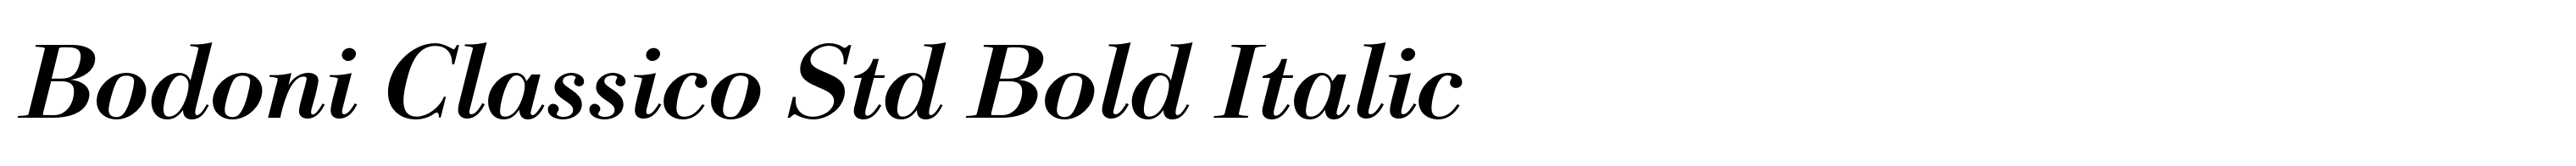 Bodoni Classico Std Bold Italic